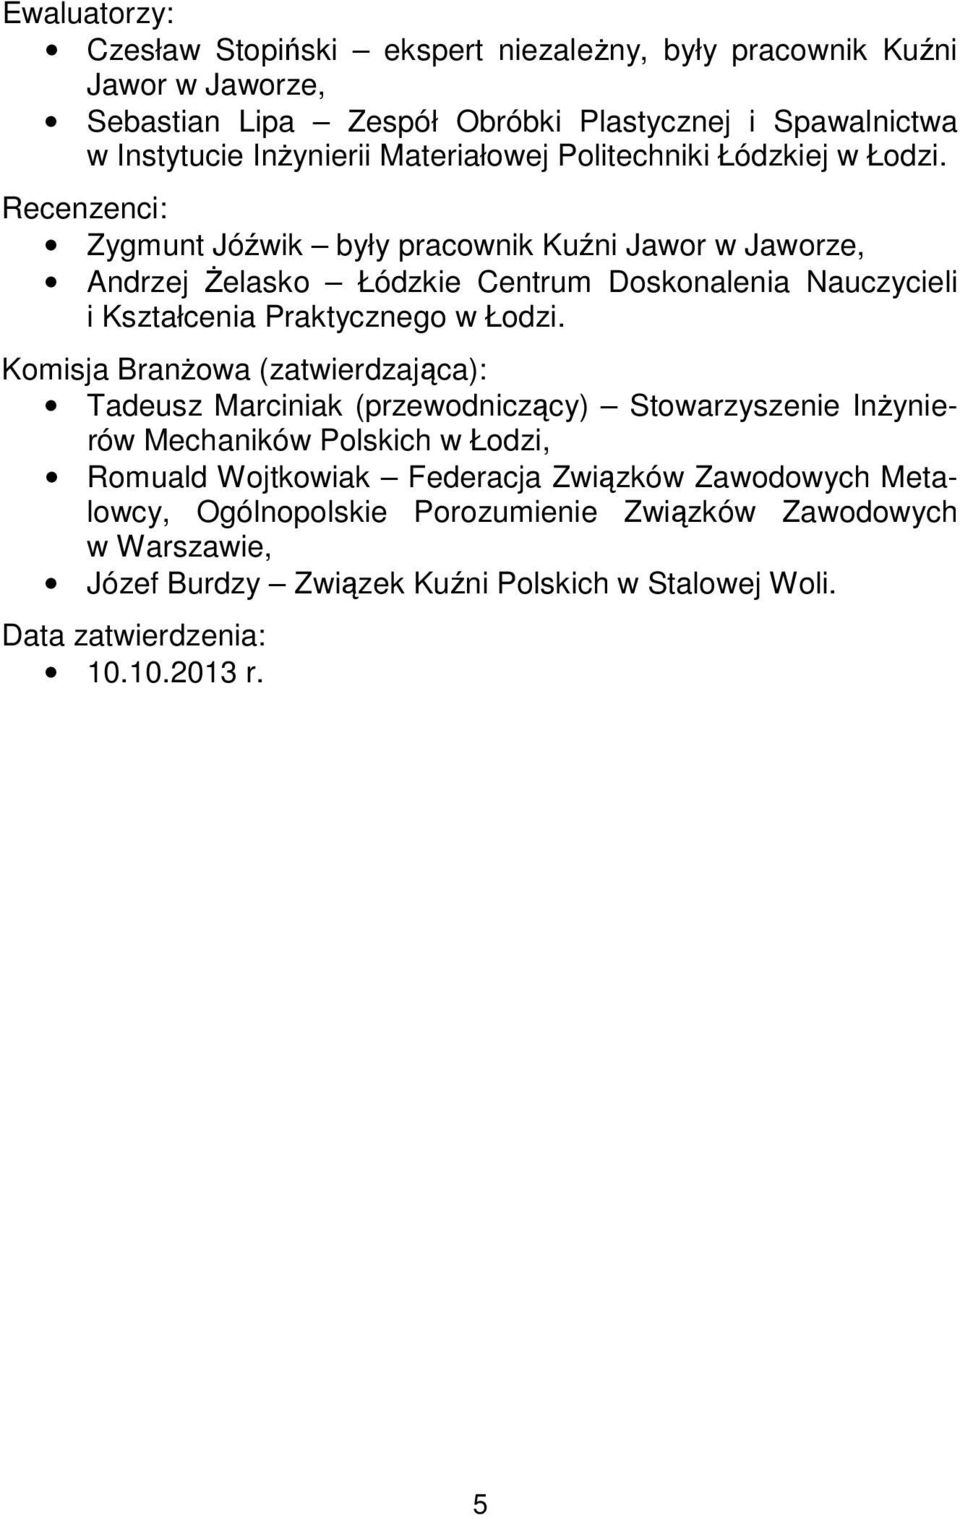 Recenzenci: Zygmunt Jóźwik były pracownik Kuźni Jawor w Jaworze, Andrzej Żelasko Łódzkie Centrum Doskonalenia Nauczycieli i Kształcenia Praktycznego w Łodzi.